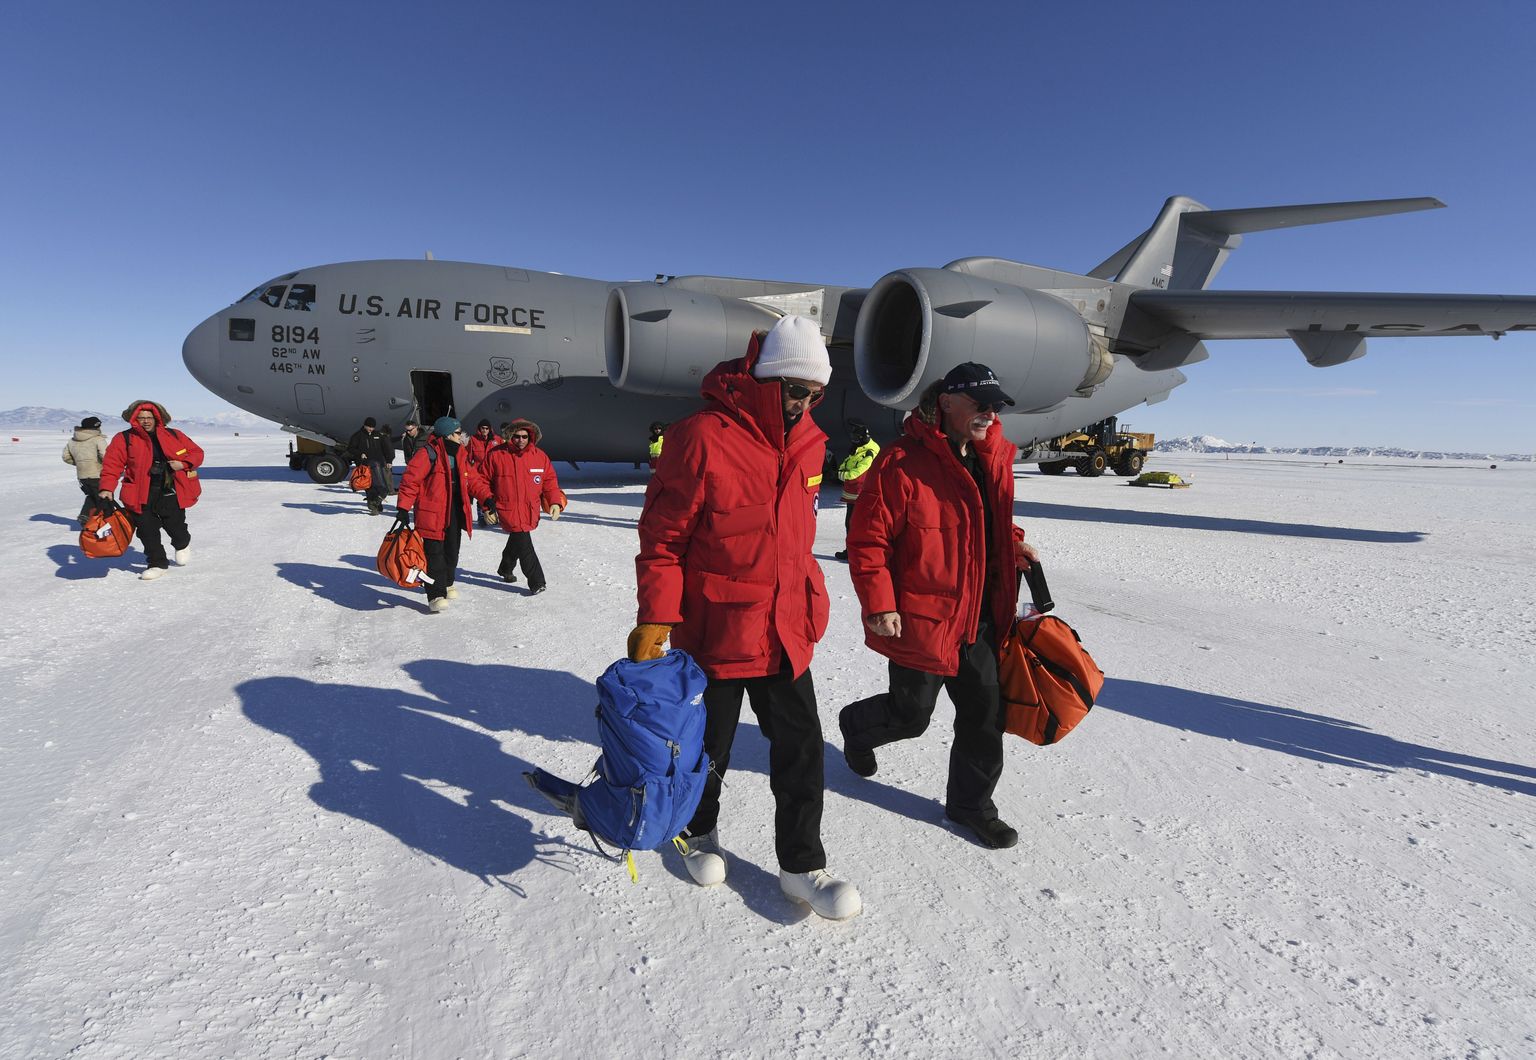 Briti polaarjaama meeskond peab Antarktika jää mõranemise tõttu evakueeruma. Pilt on illustratiivne.